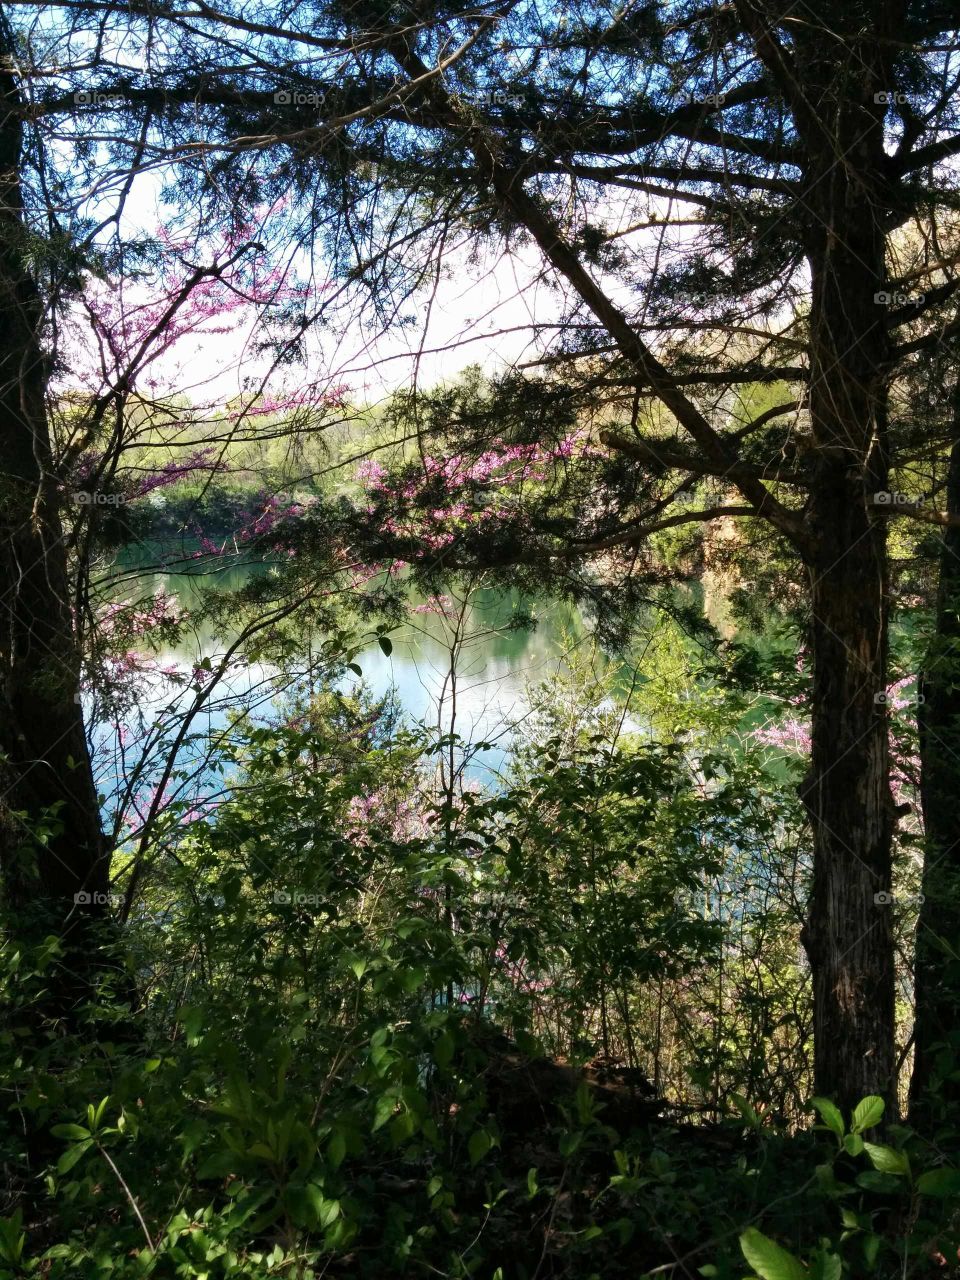 lake through the trees